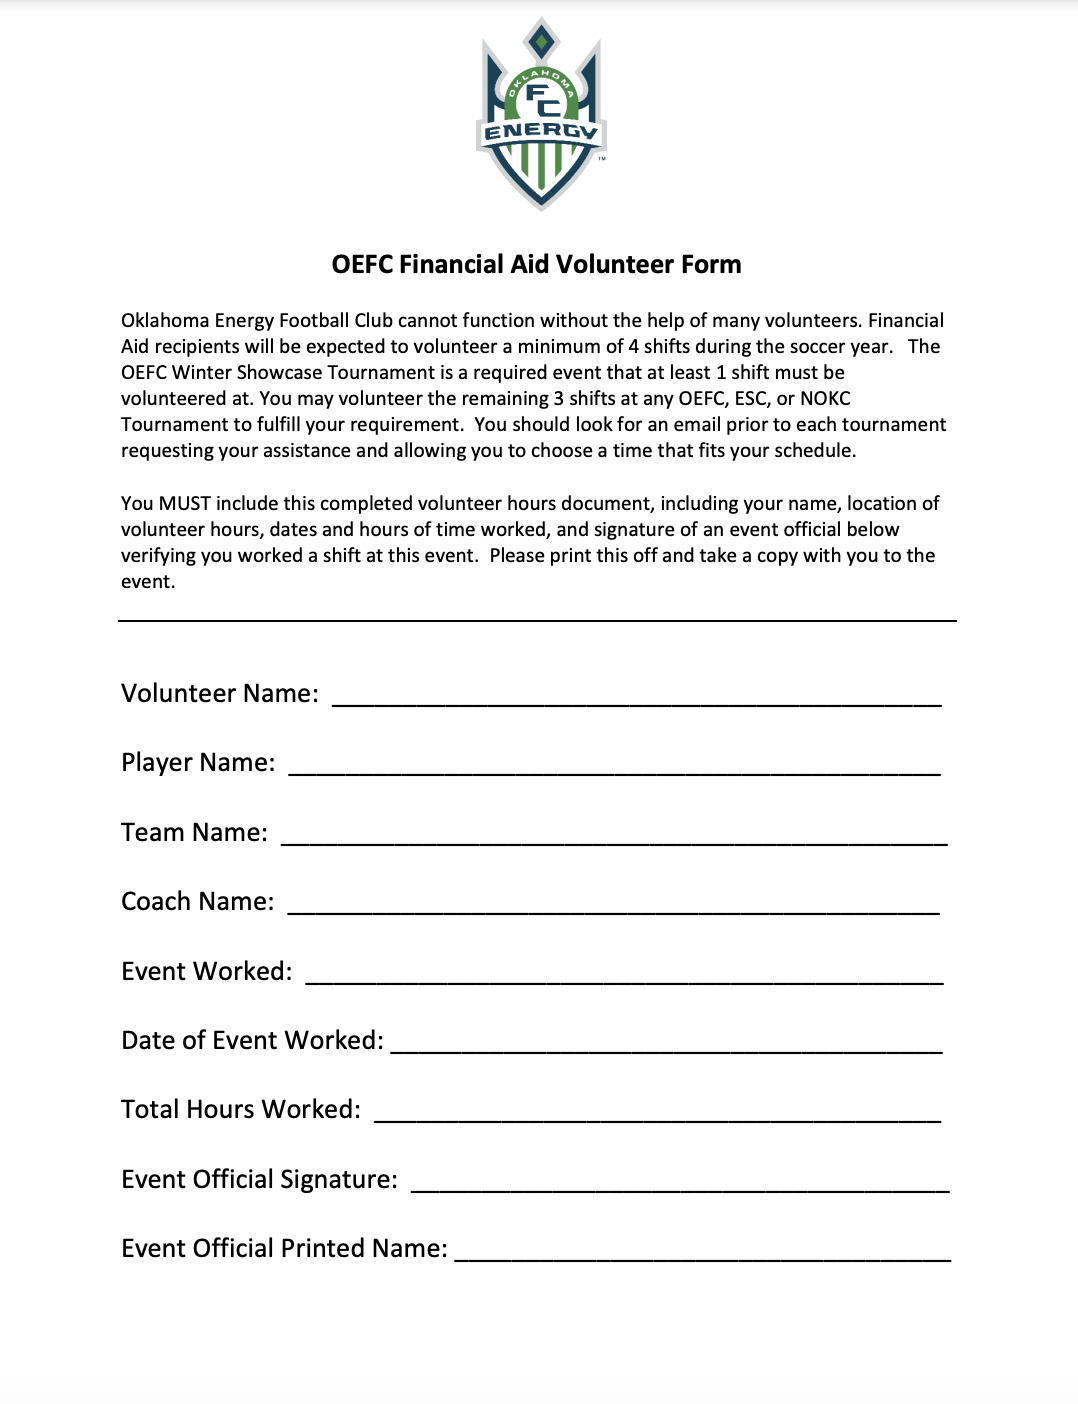 OEFC Volunteer Form